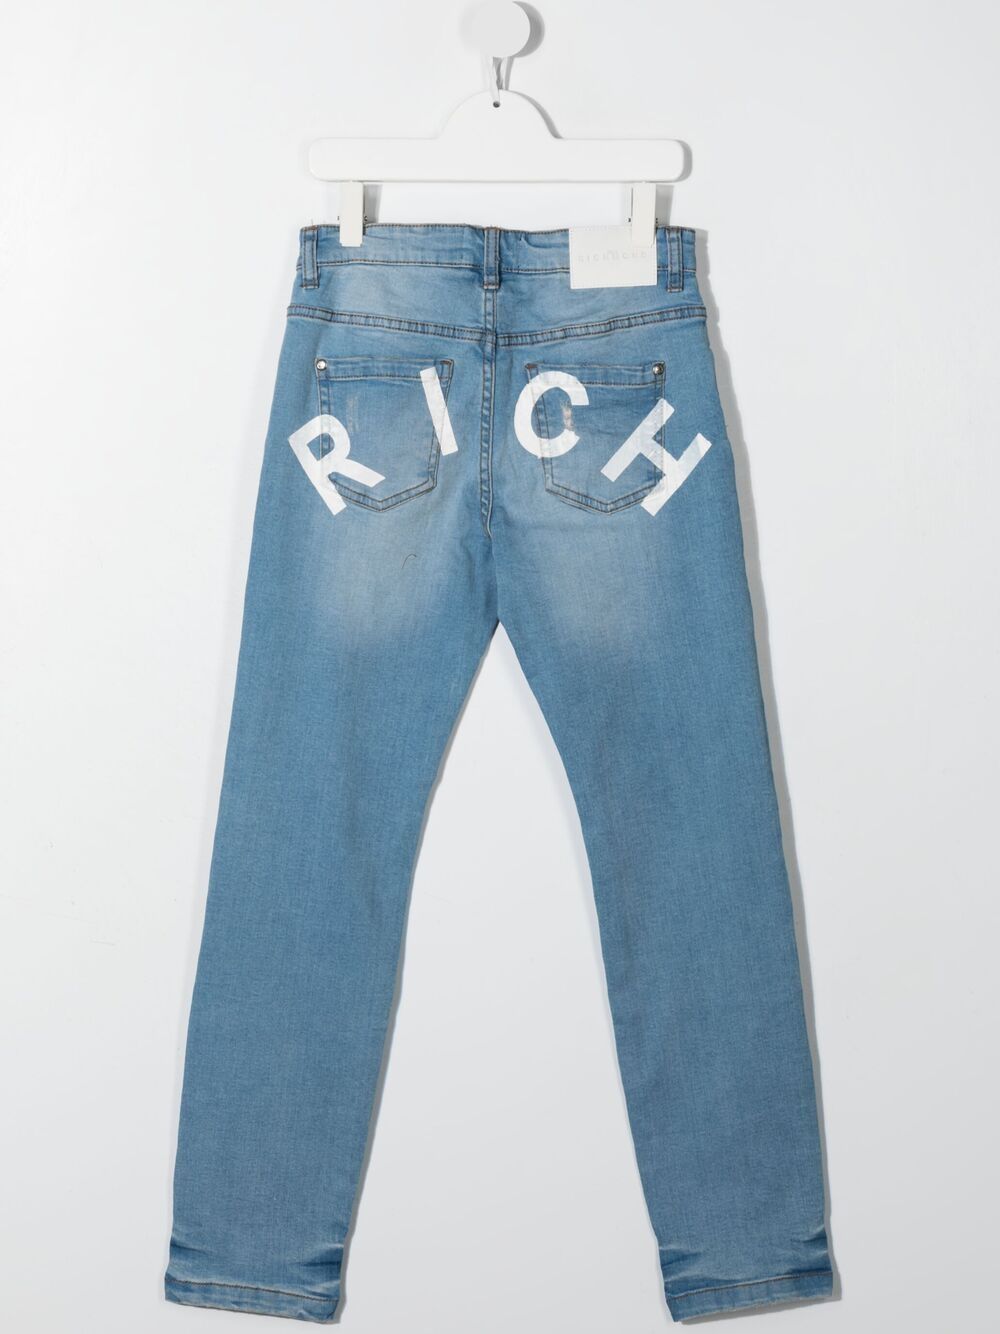 фото John richmond junior джинсы с логотипом и прорезями